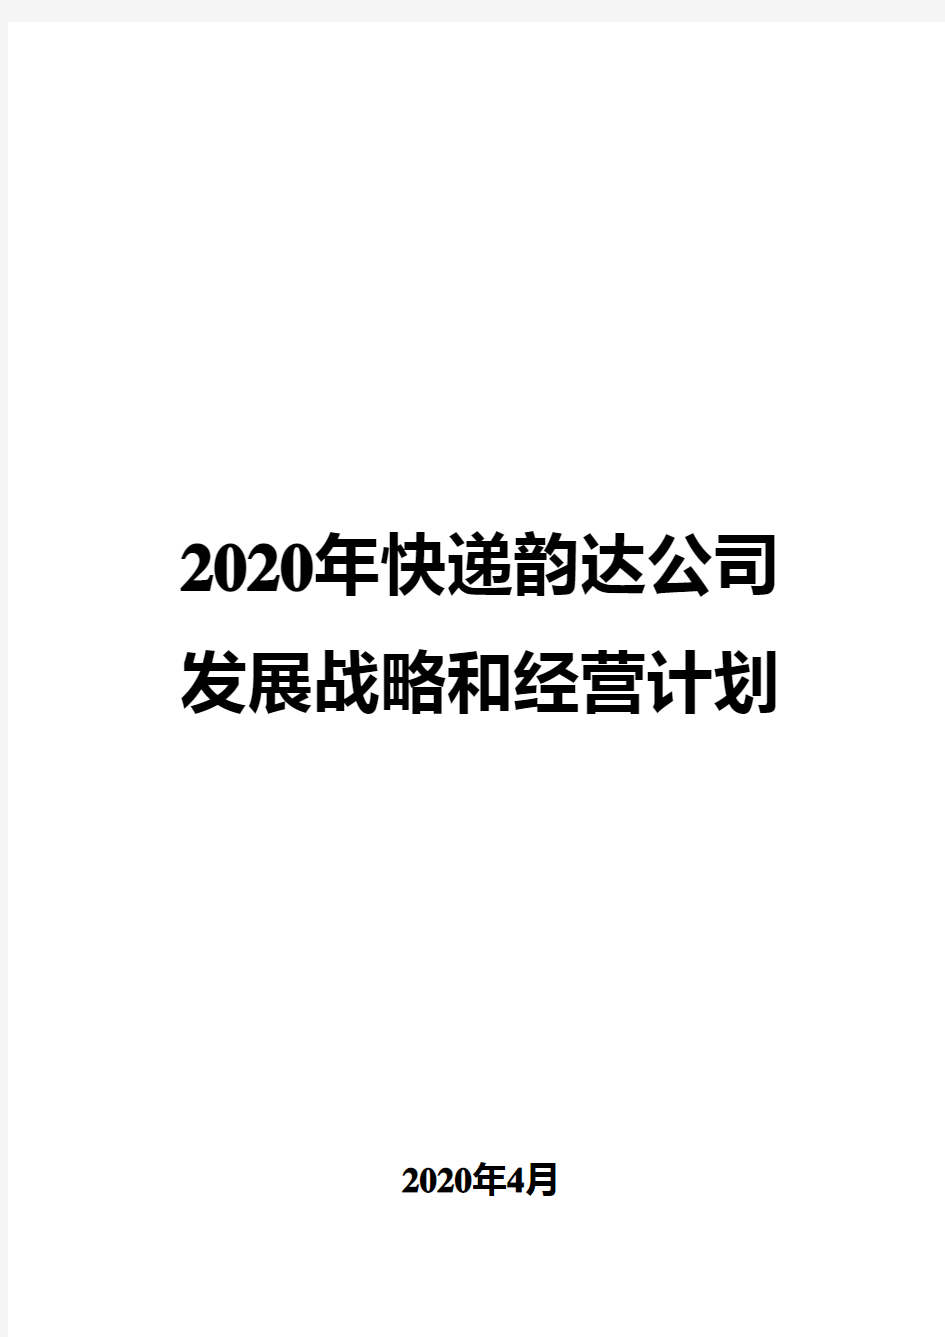 2020年快递韵达公司发展战略和经营计划